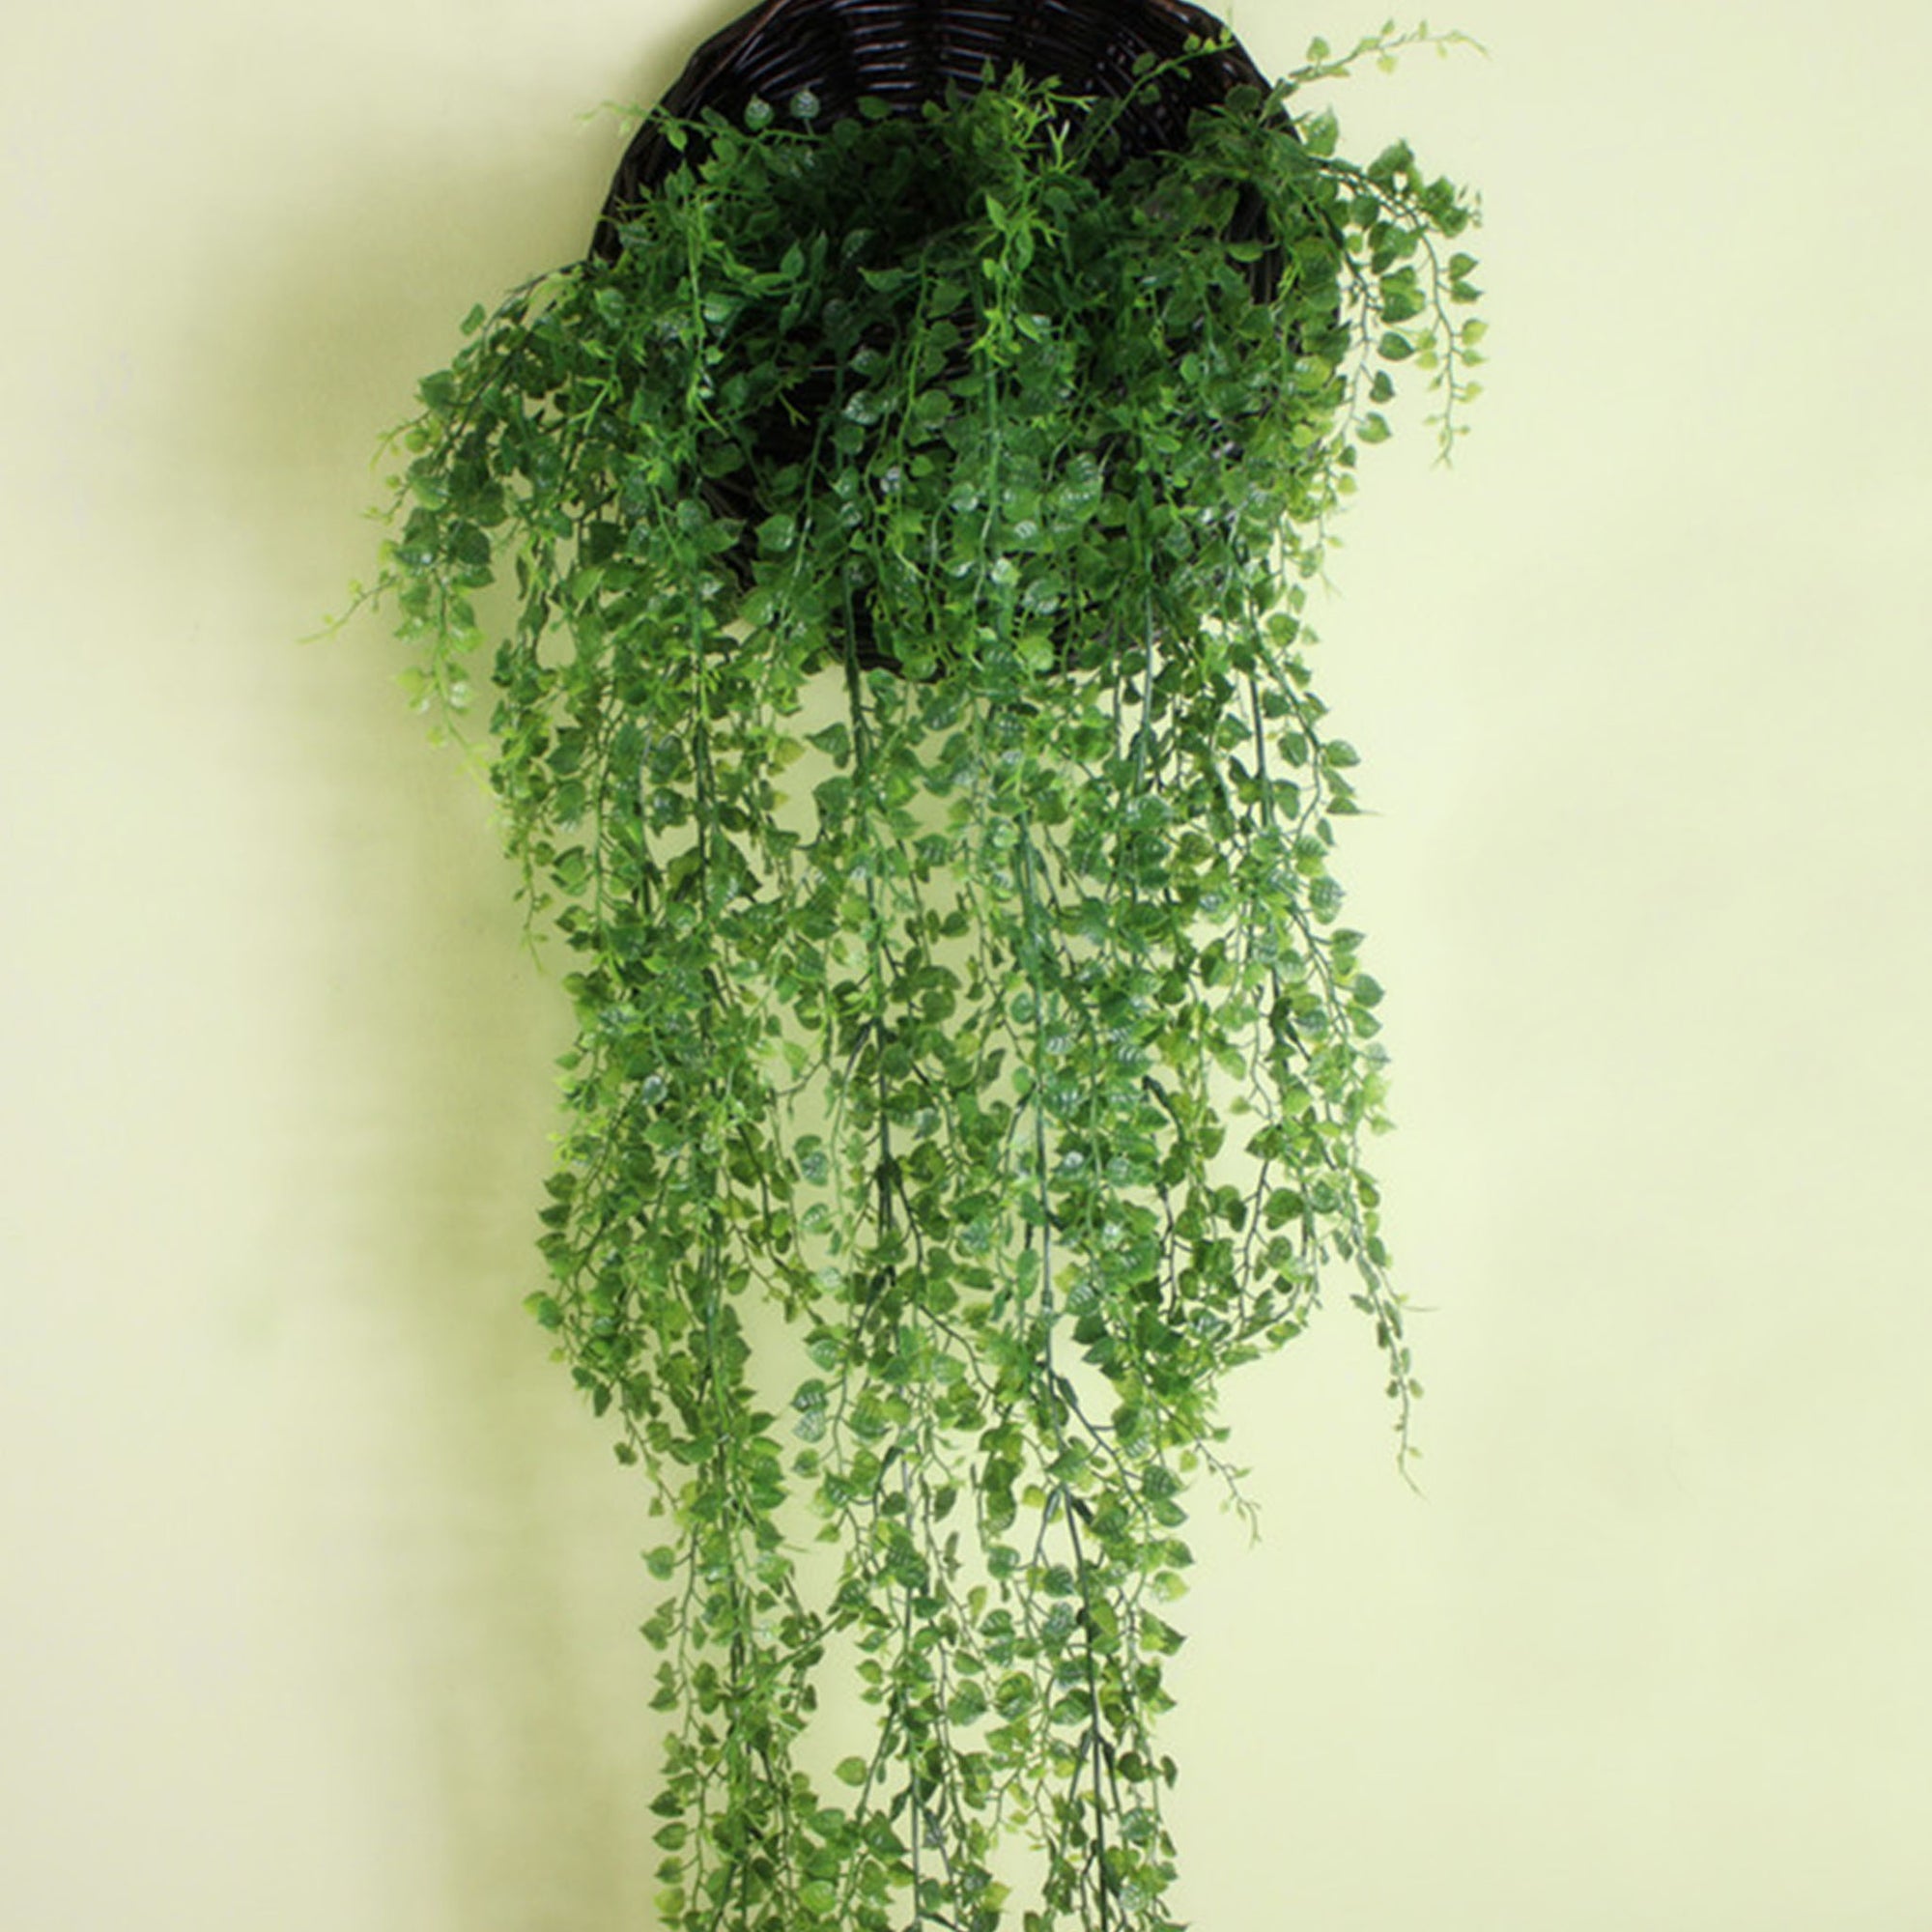 Artificial Indoor Outdoor Hanging Plants Fake Vine - VANRINA